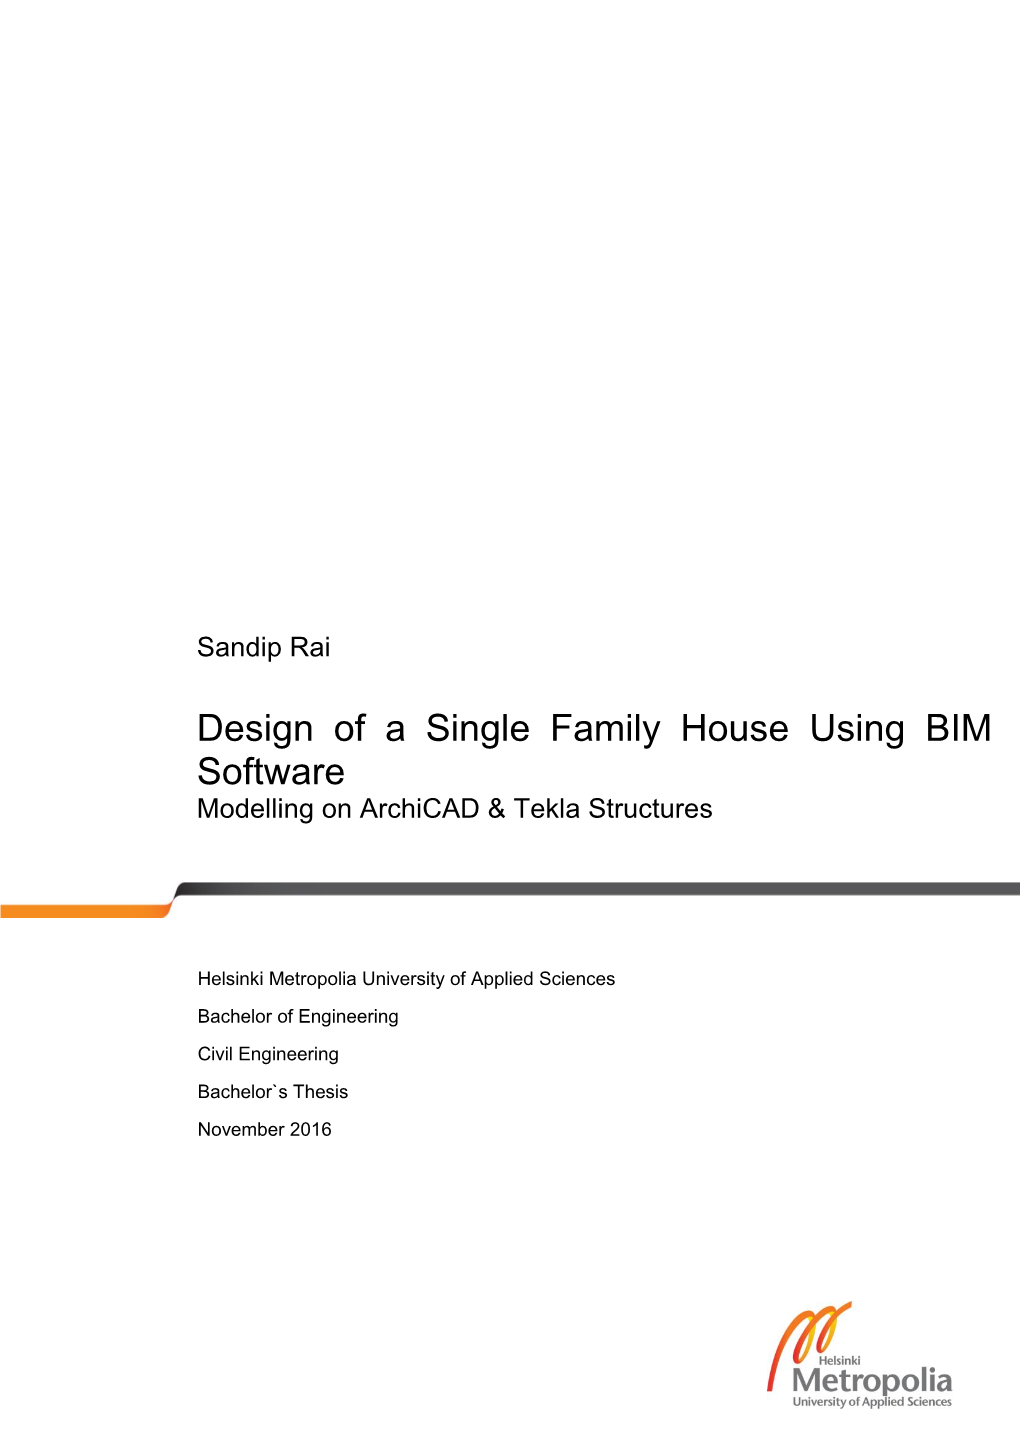 Design of a Single Family House Using BIM Software